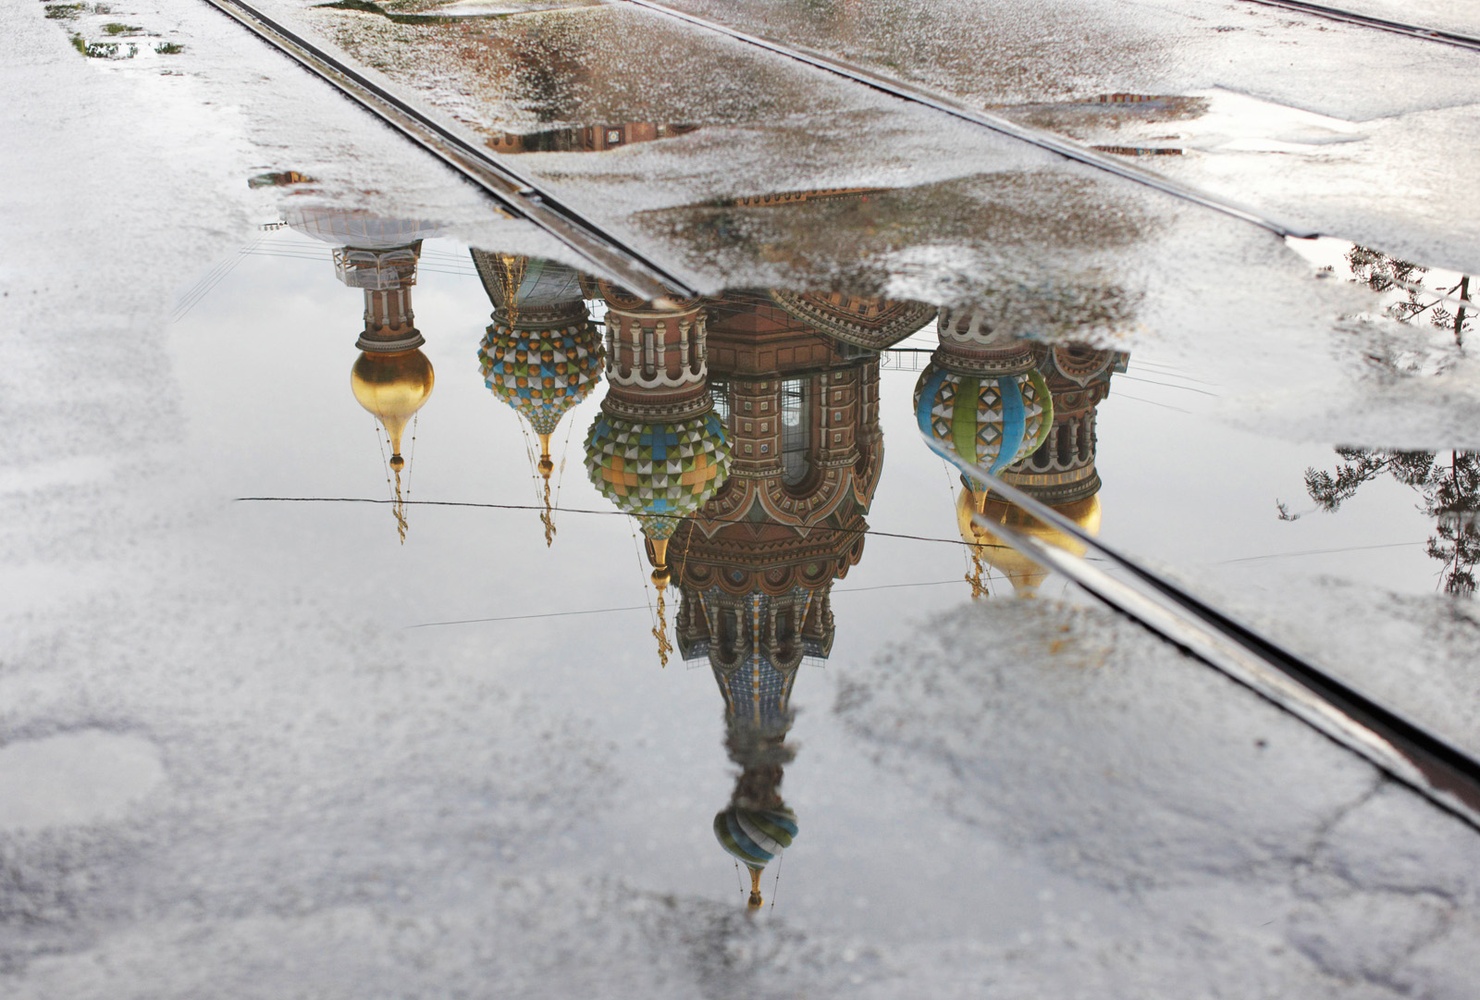 Nach dem Platzregen, St. Petersburg